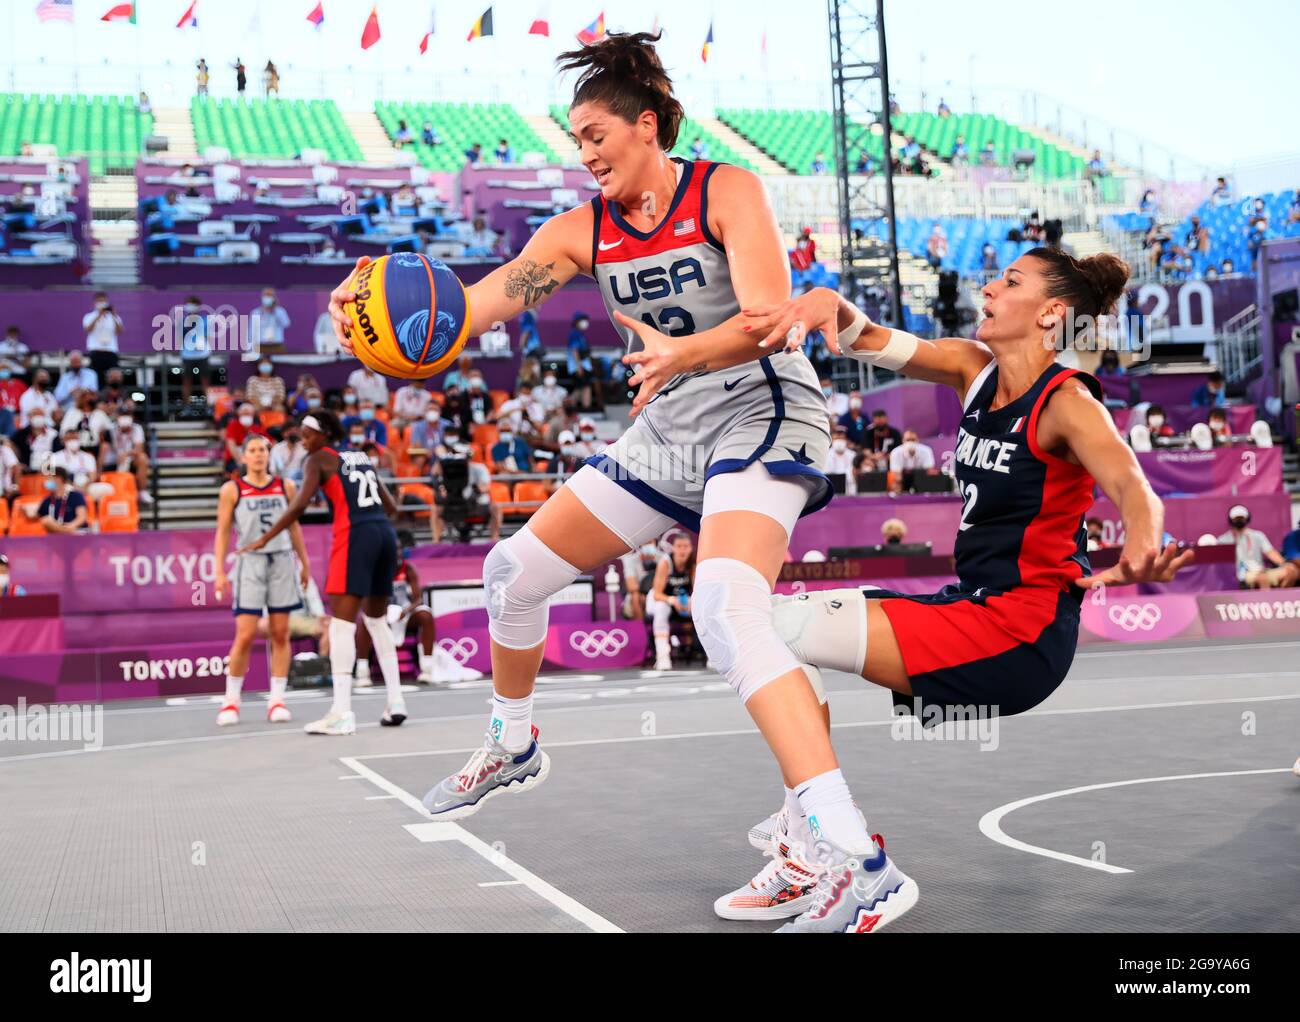 Tokio, Japón. 28th de julio de 2021. Stefanie Dolson, de los Estados Unidos, se vibra con Laetitia Guapo, de Francia, durante la semifinal femenina de baloncesto 3x3 entre los Estados Unidos y Francia en Tokio, Japón, el 28 de julio de 2021. Crédito: Lan Hongguang/Xinhua/Alamy Live News Foto de stock